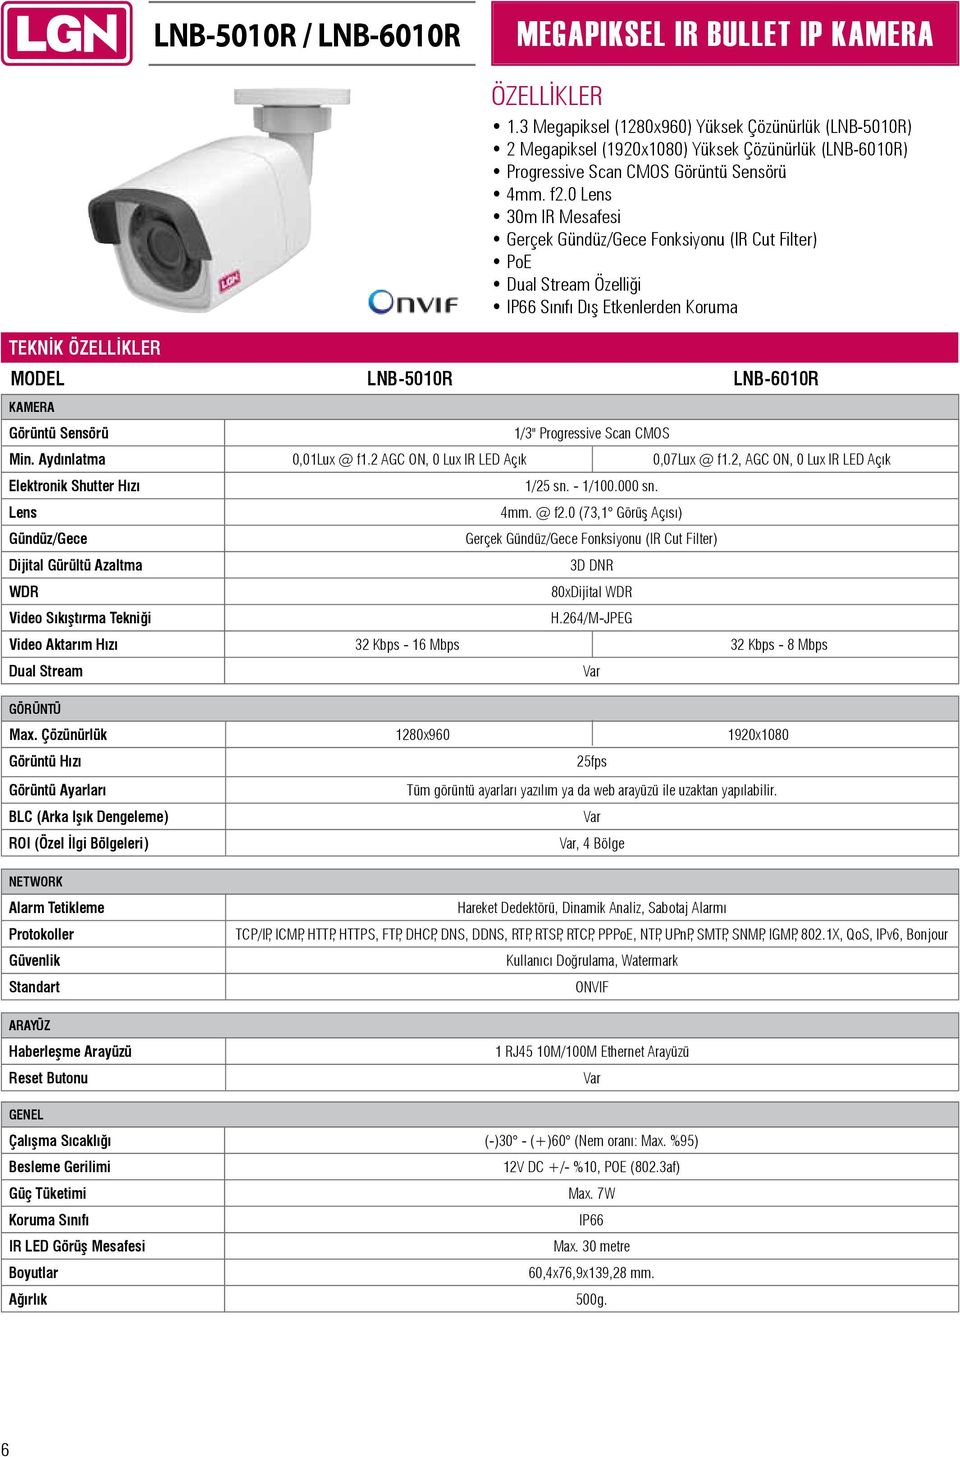 0 Lens 30m IR Mesafesi Gerçek Gündüz/Gece Fonksiyonu (IR Cut Filter) PoE Dual Stream Özelliği IP66 Sınıfı Dış Etkenlerden Koruma TEKNİK MODEL LNB-5010R LNB-6010R KAMERA Görüntü Sensörü 1/3"